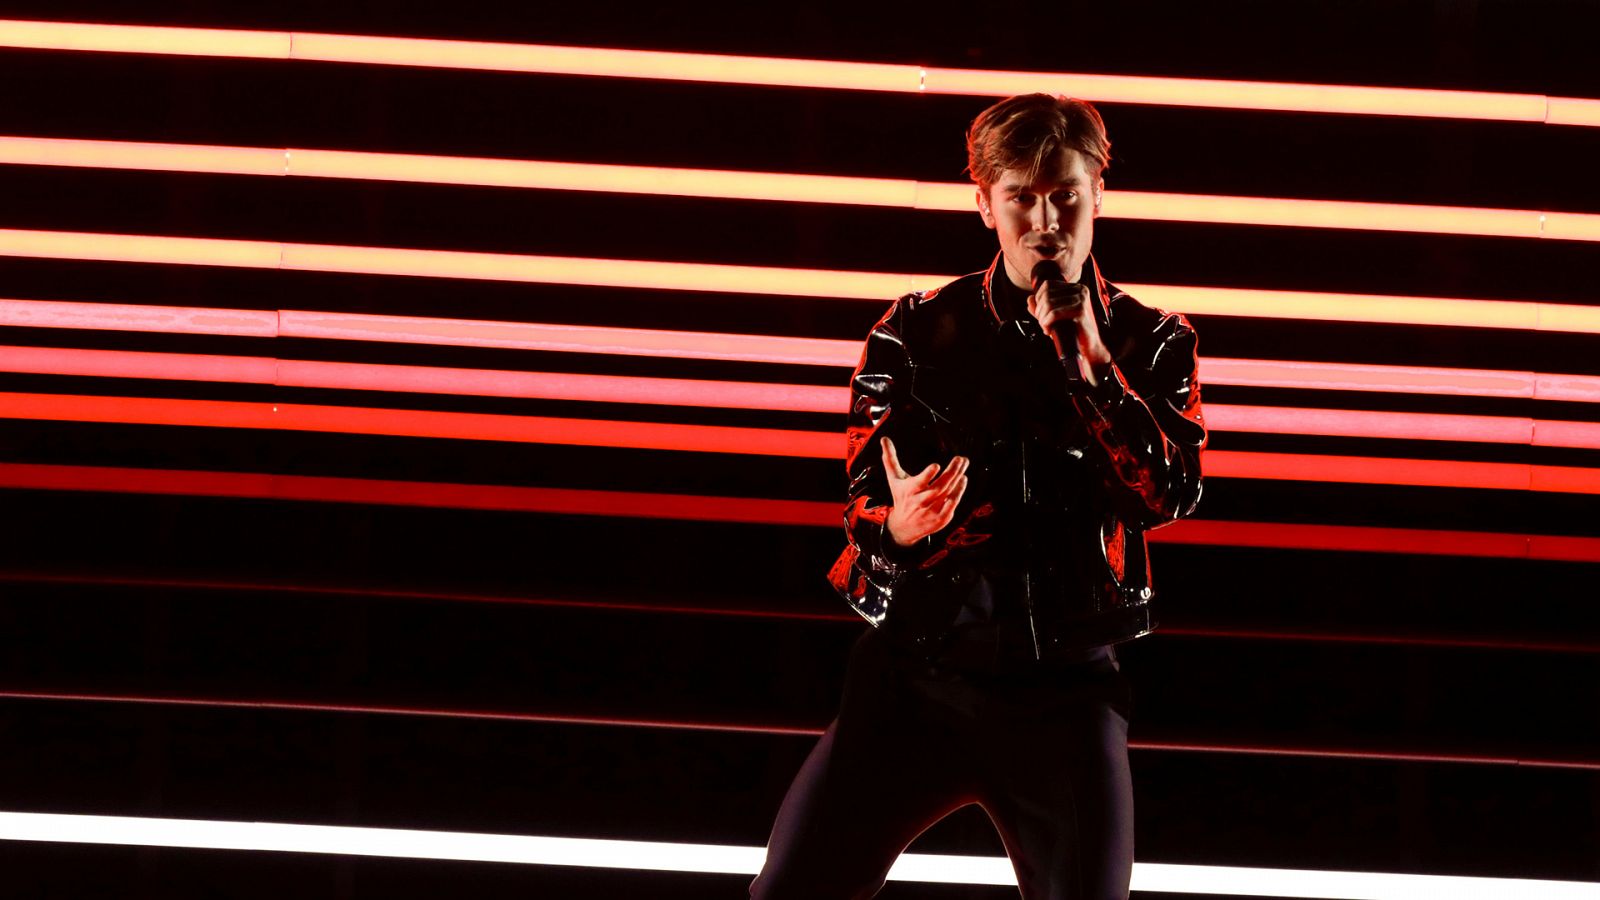 Eurovisión - Suecia: Benjamin Ingrosso canta "Dance you off" en la segunda semifinal de Eurovisión 2018